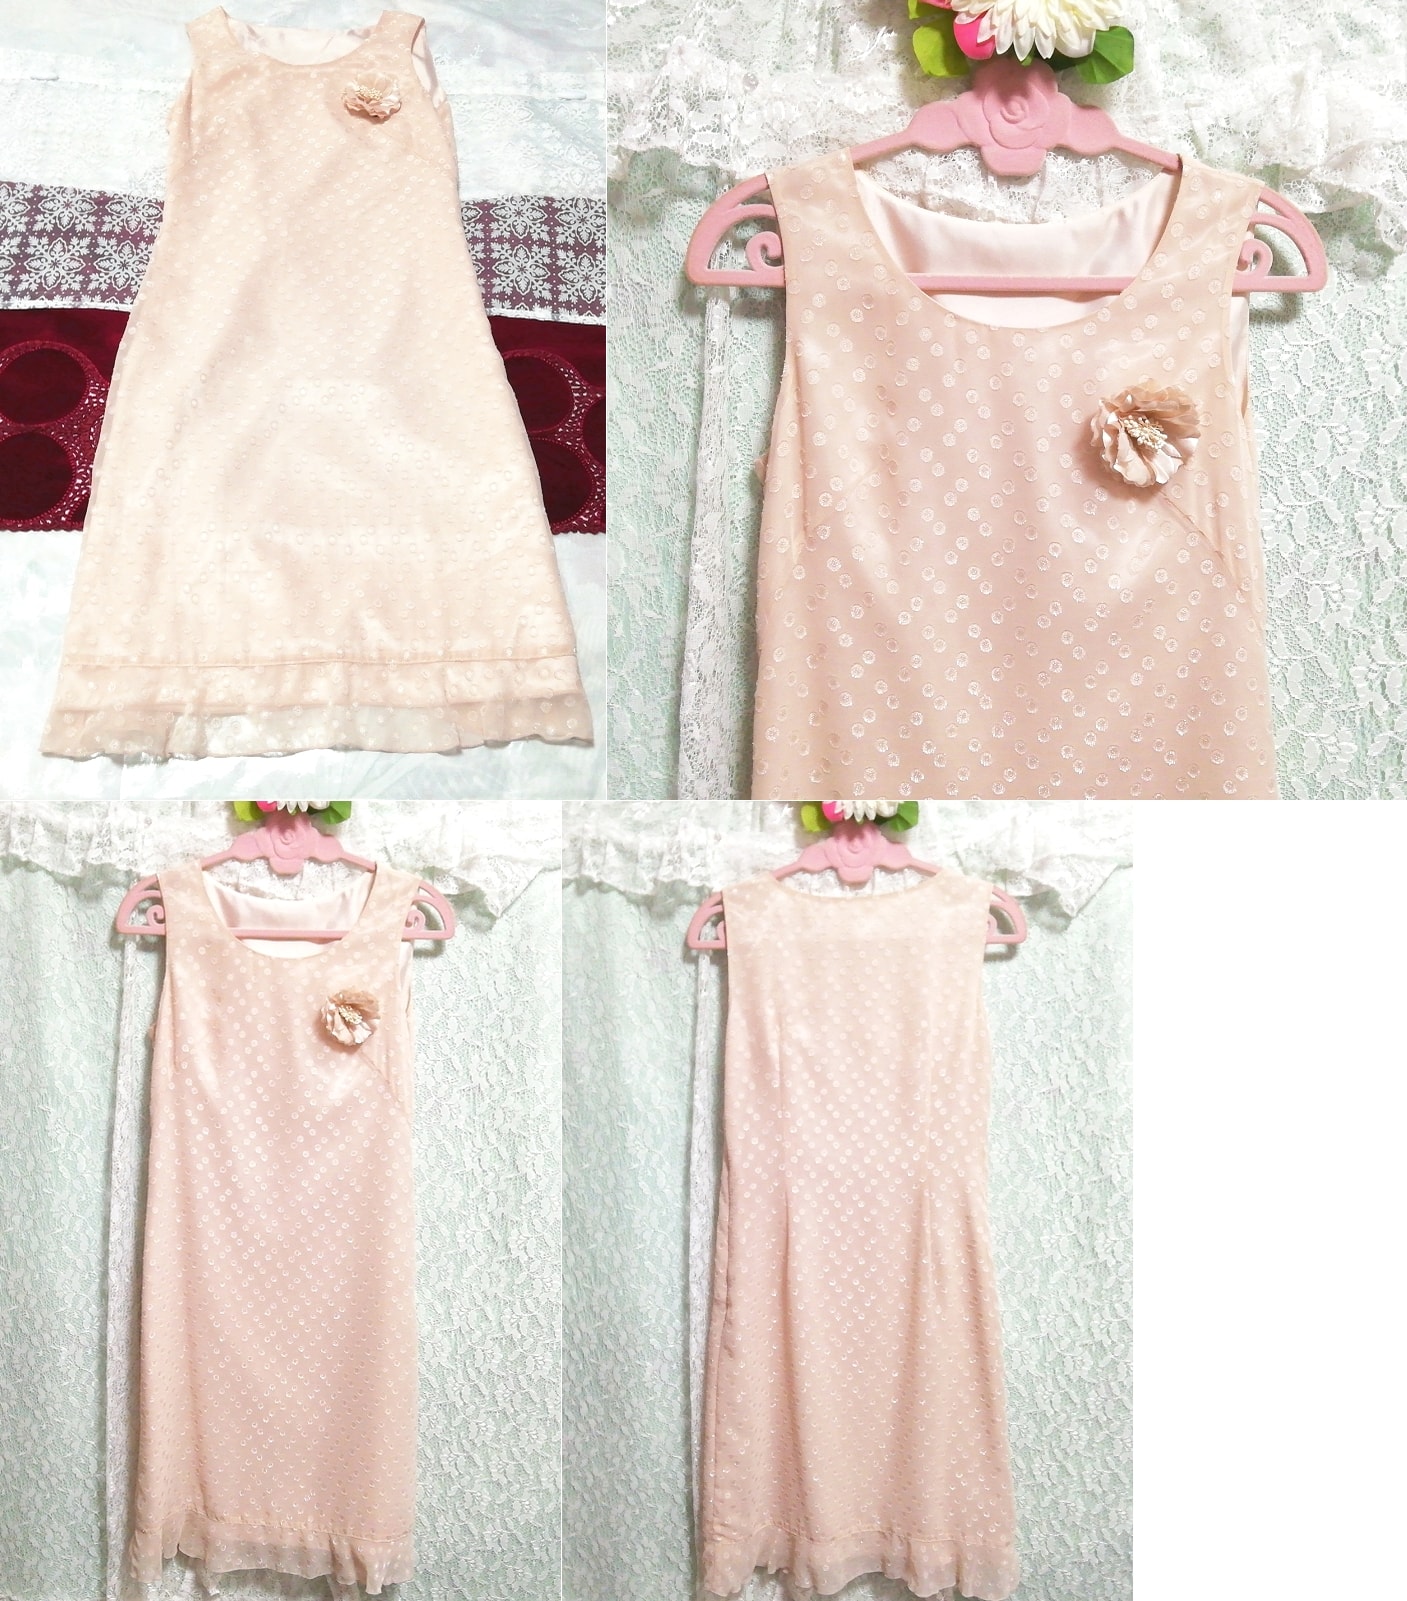 Flaxenrosa Rosen-Corsage-Negligé-Nachthemd aus Chiffon, ärmellos, einteiliges Kleid, Mode, Frauenmode, Nachtwäsche, Pyjama